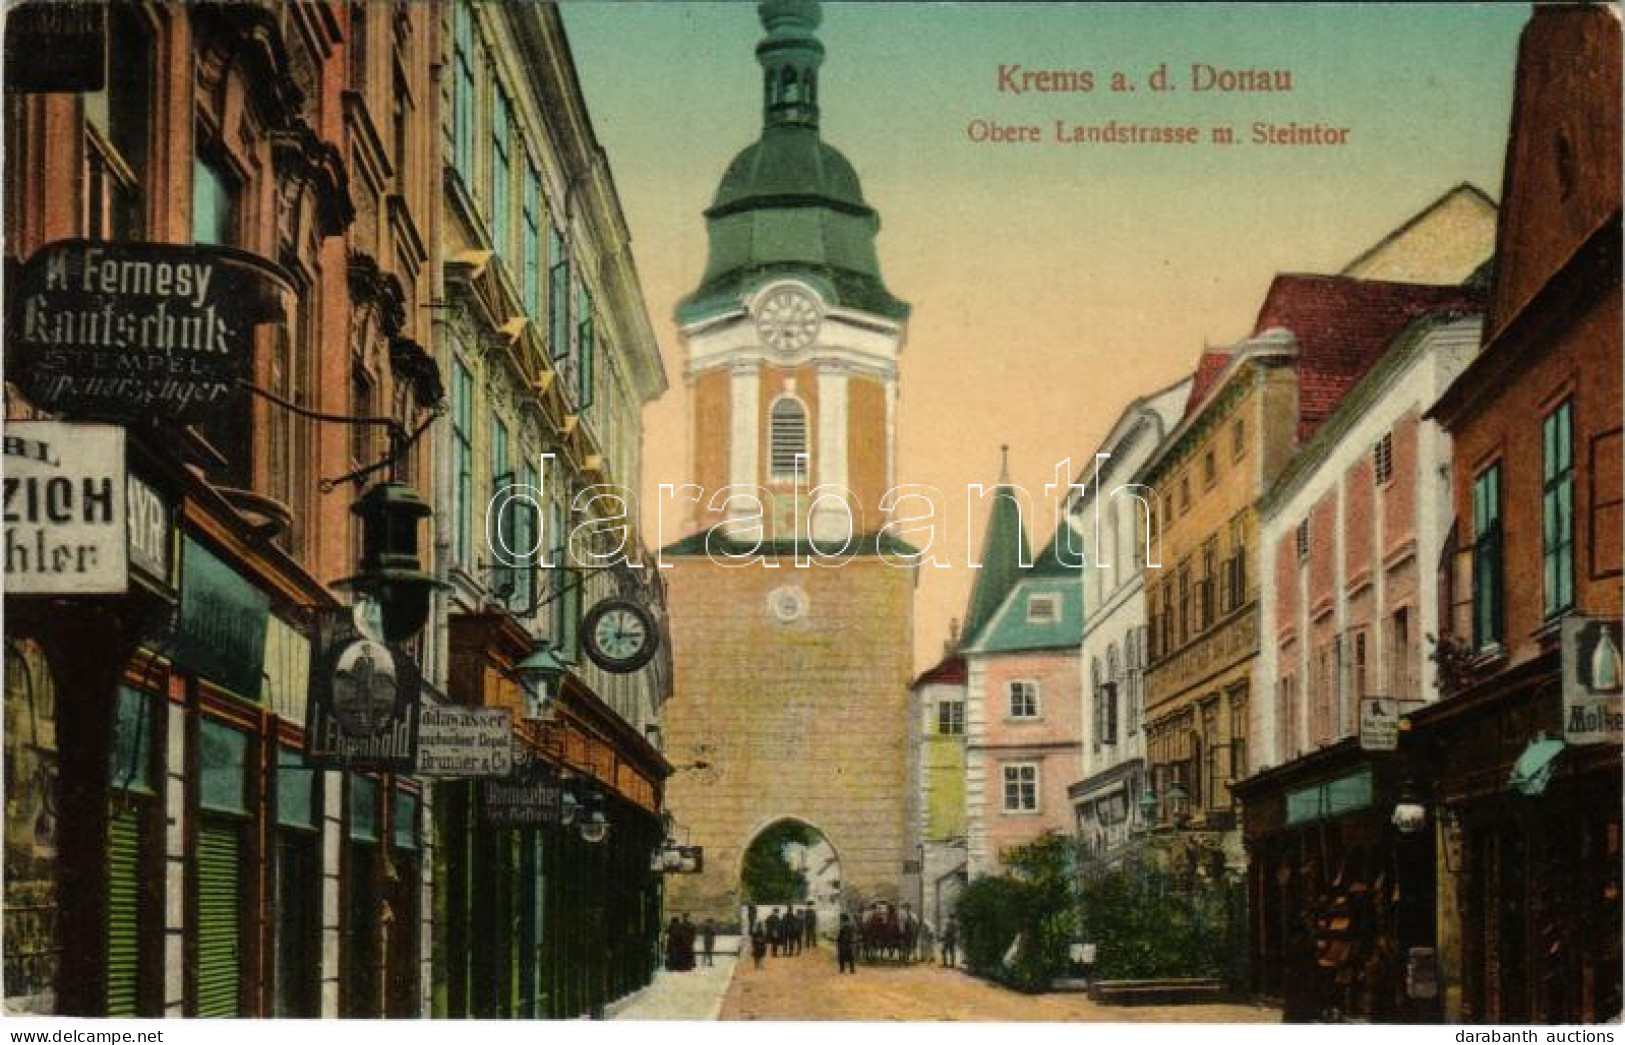 T2 1912 Krems An Der Donau, Obere Landstrasse M. Steintor / Street View, Gate, Shop Of K. Fernesy - Ohne Zuordnung